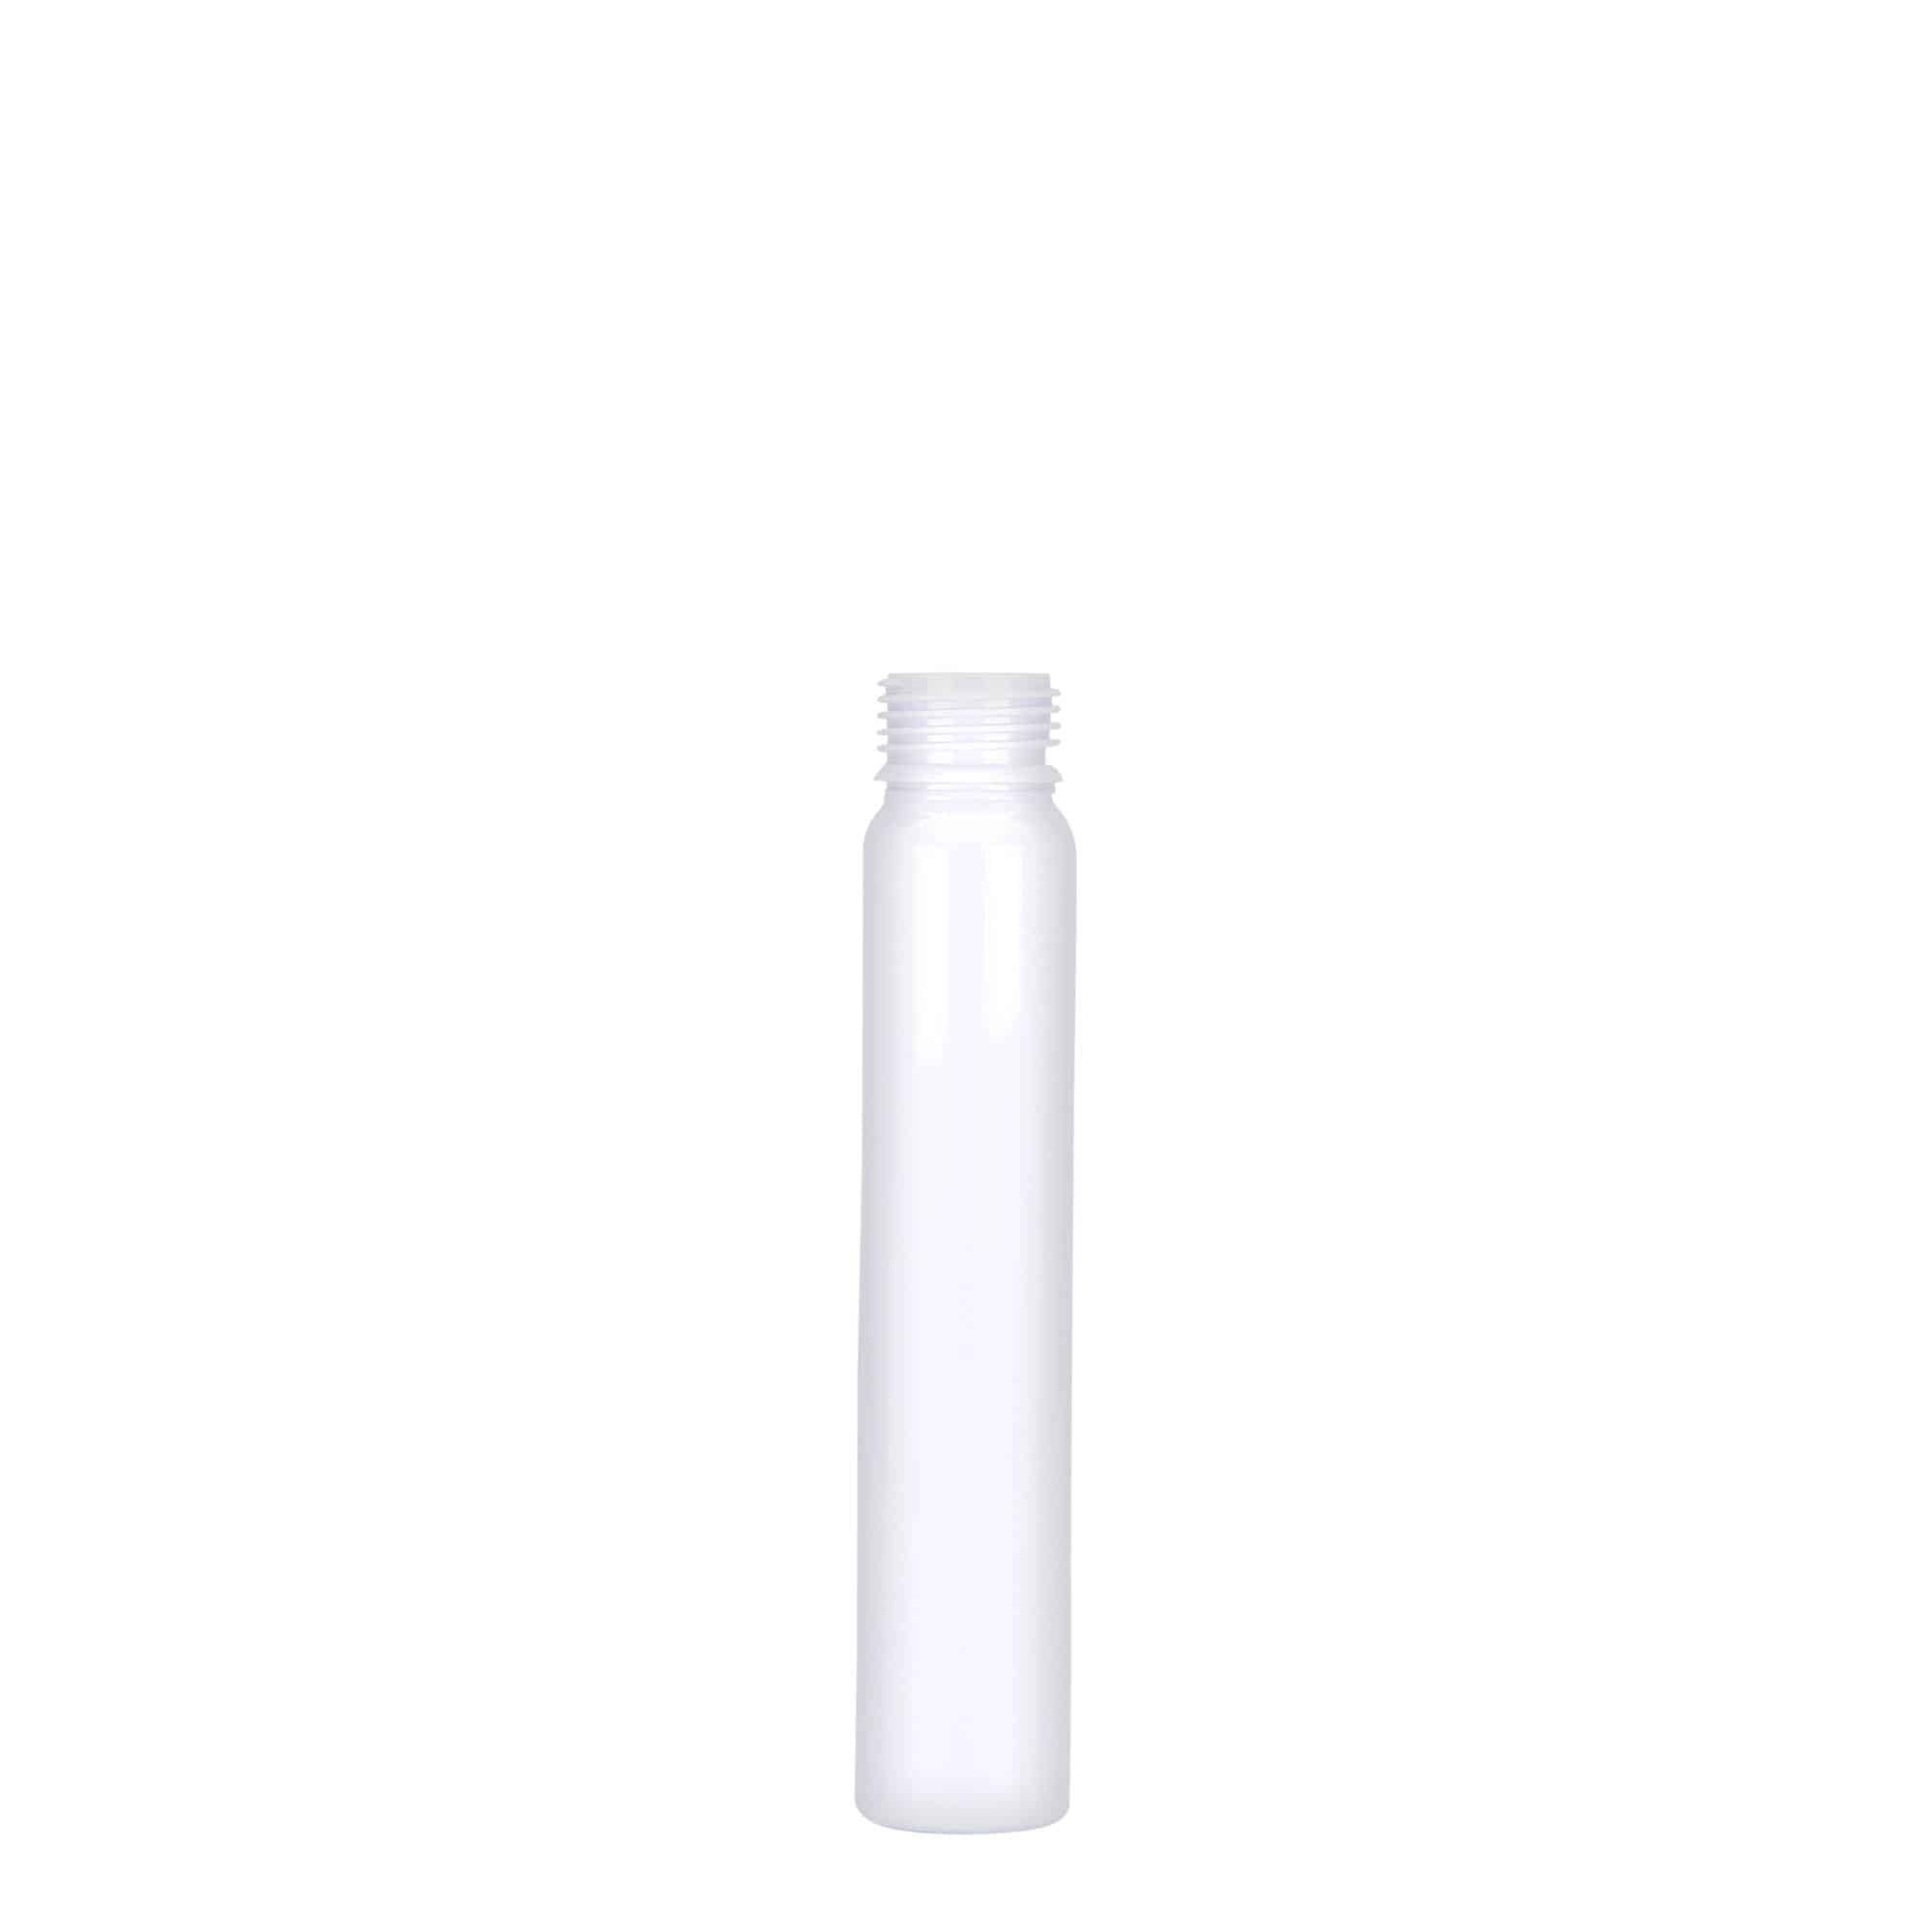 25 ml PET tube, plastic, white, closure: screw cap